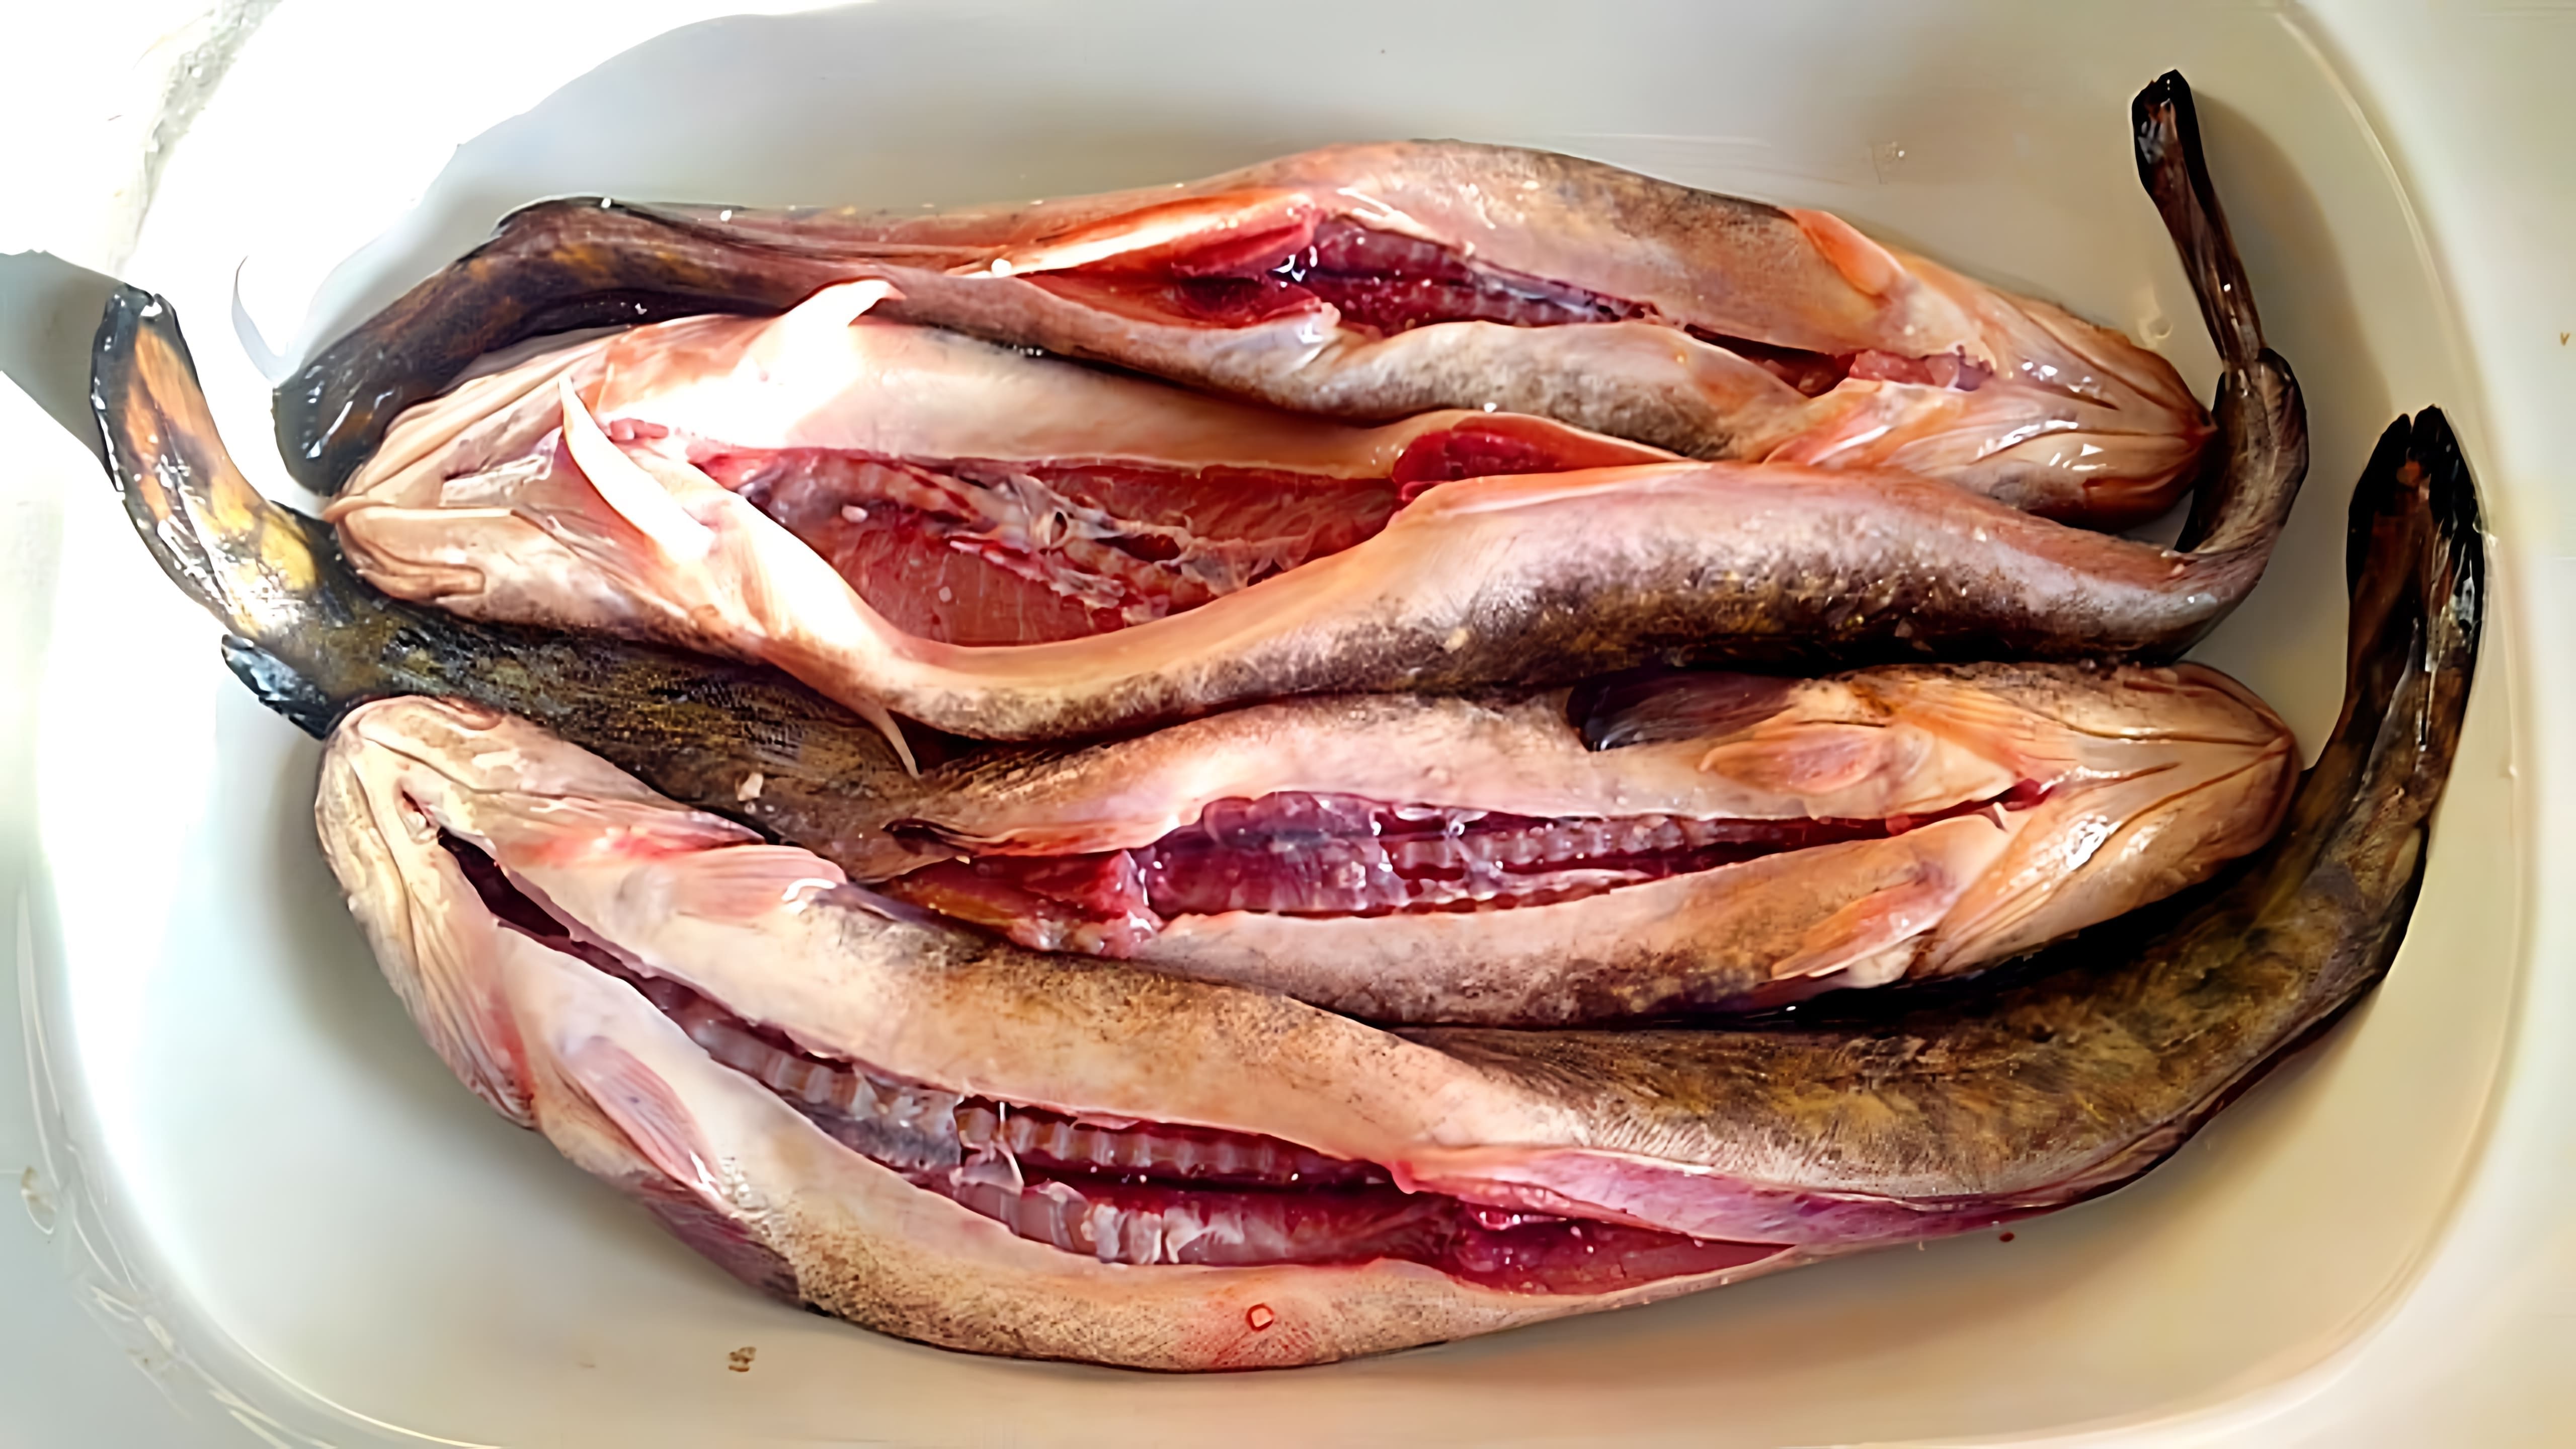 В этом видео рассказывается о налиме, рыбе семейства тресковых, которая является отличным источником высококачественного белка и легко усваивается организмом